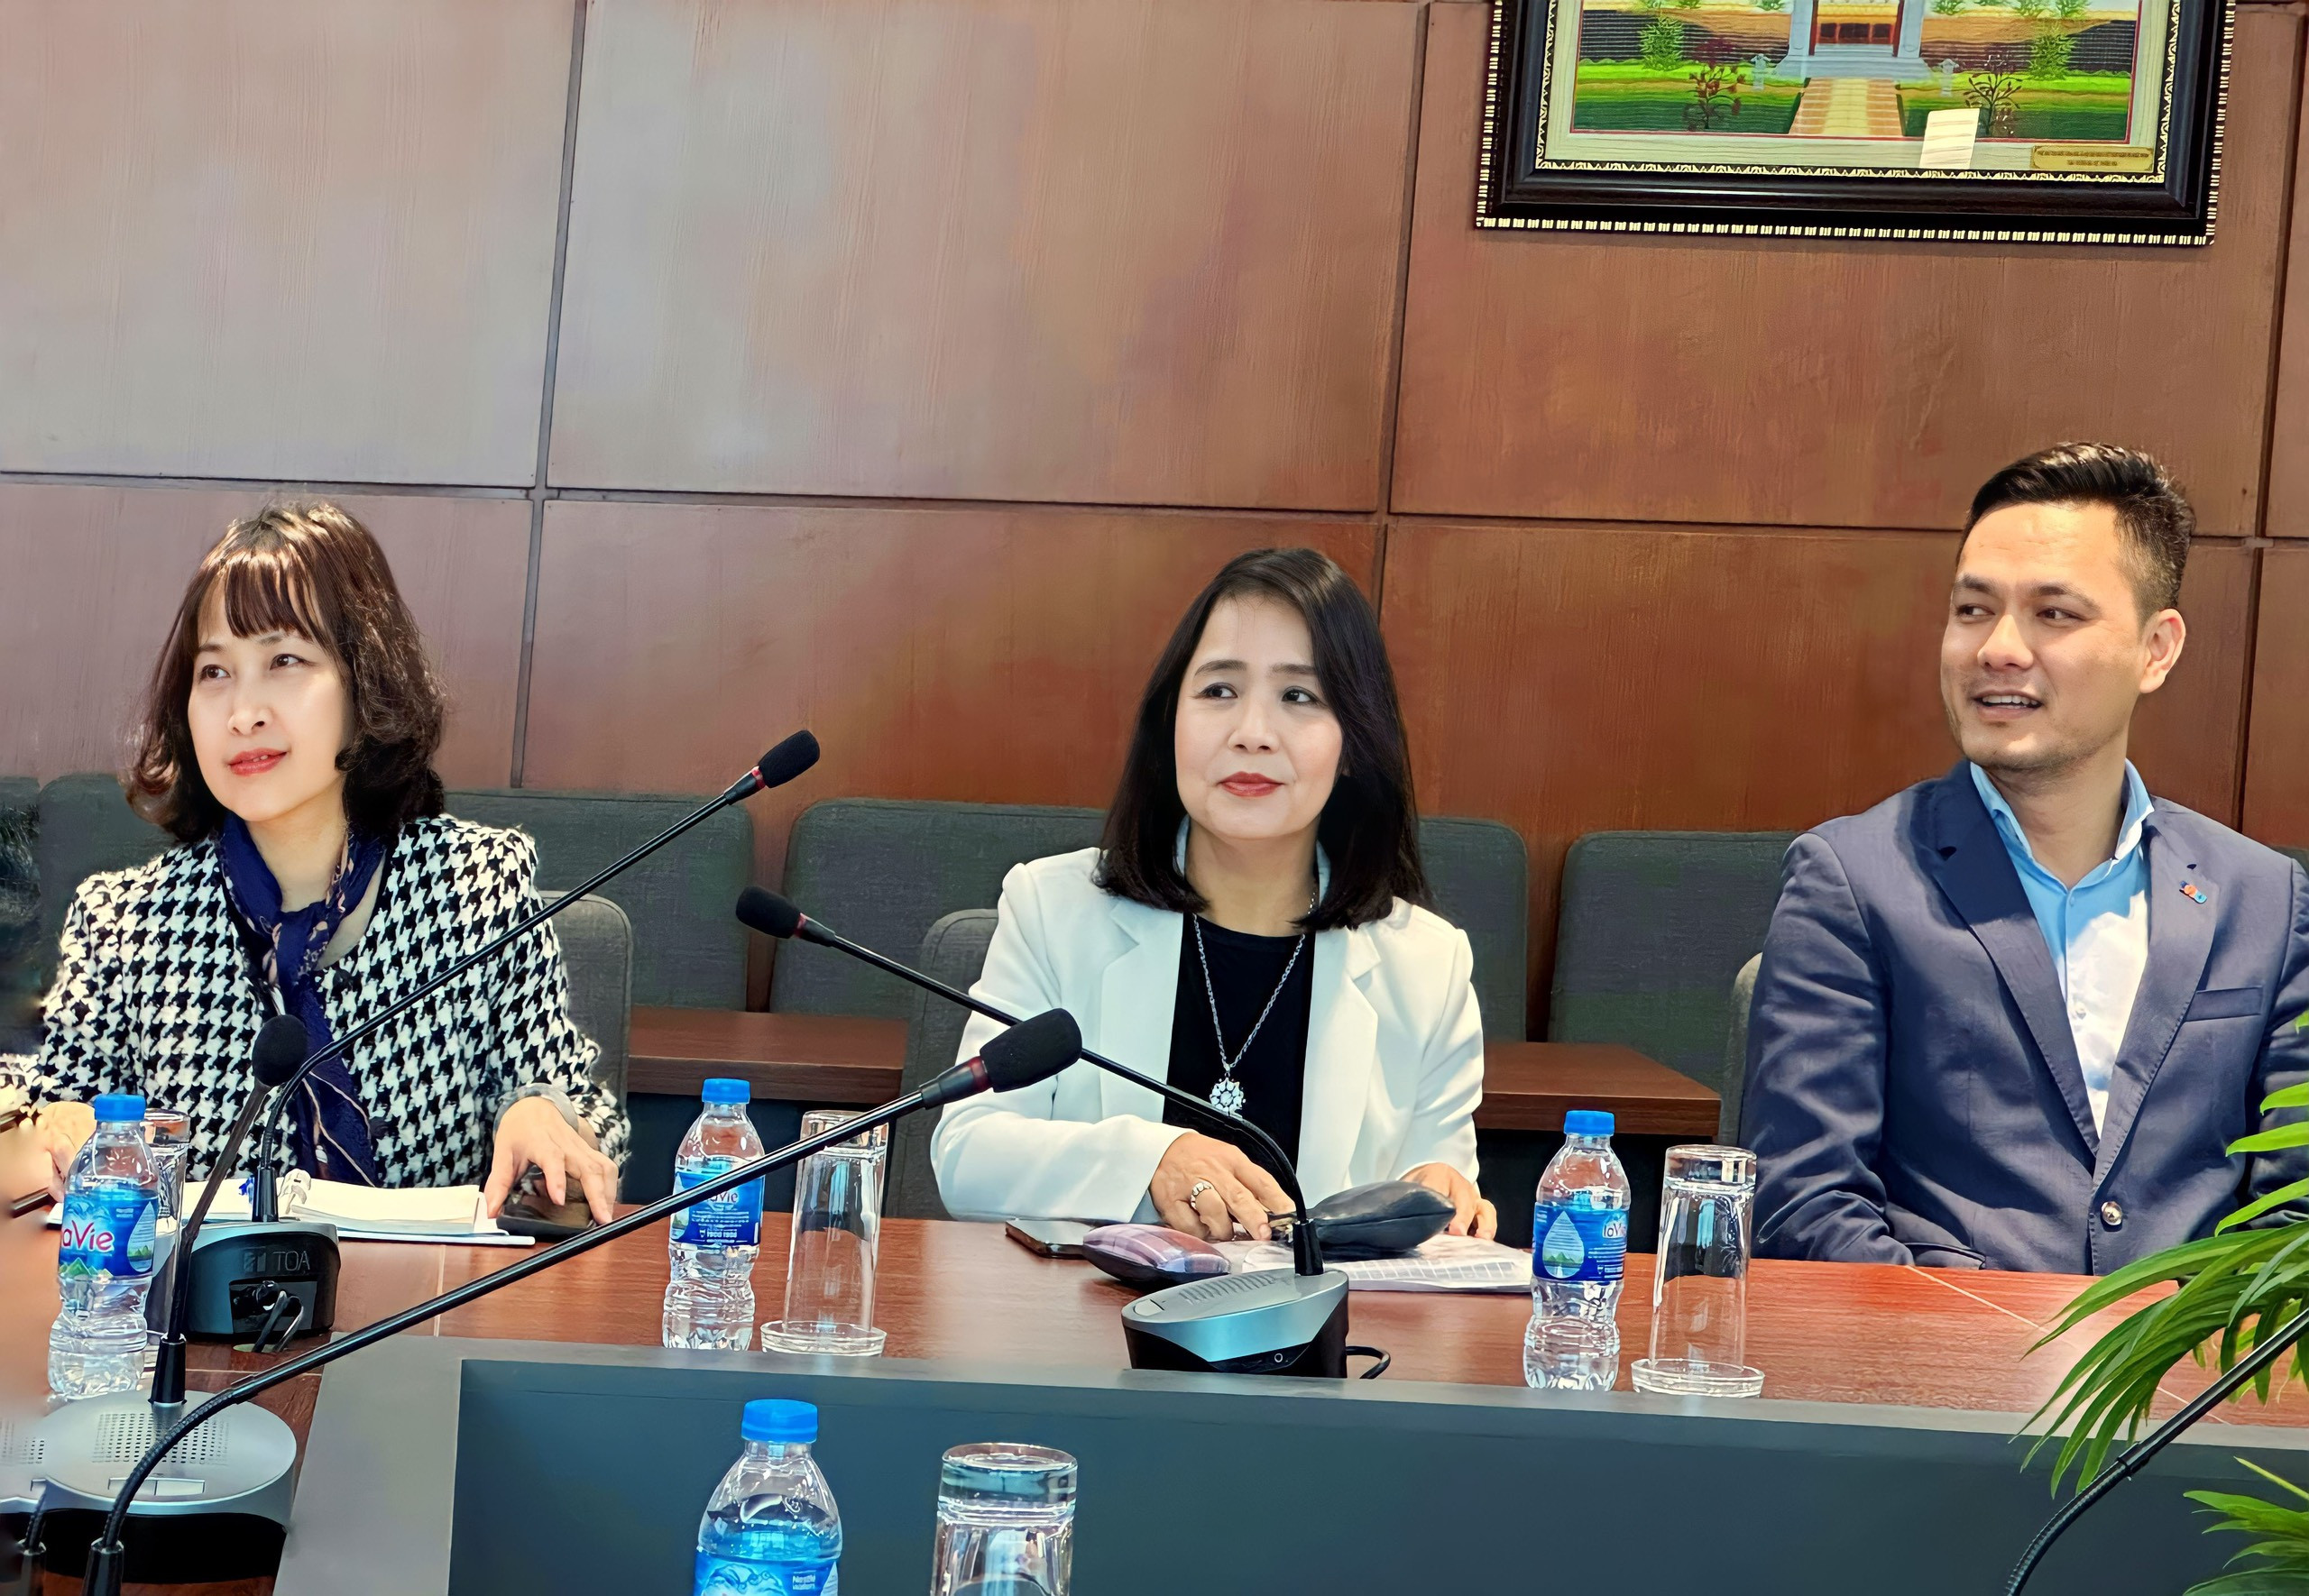 Hội thảo Khoa học cấp Khoa, năm học 2022 -2023, về "Responsible tourism in Vietnam"